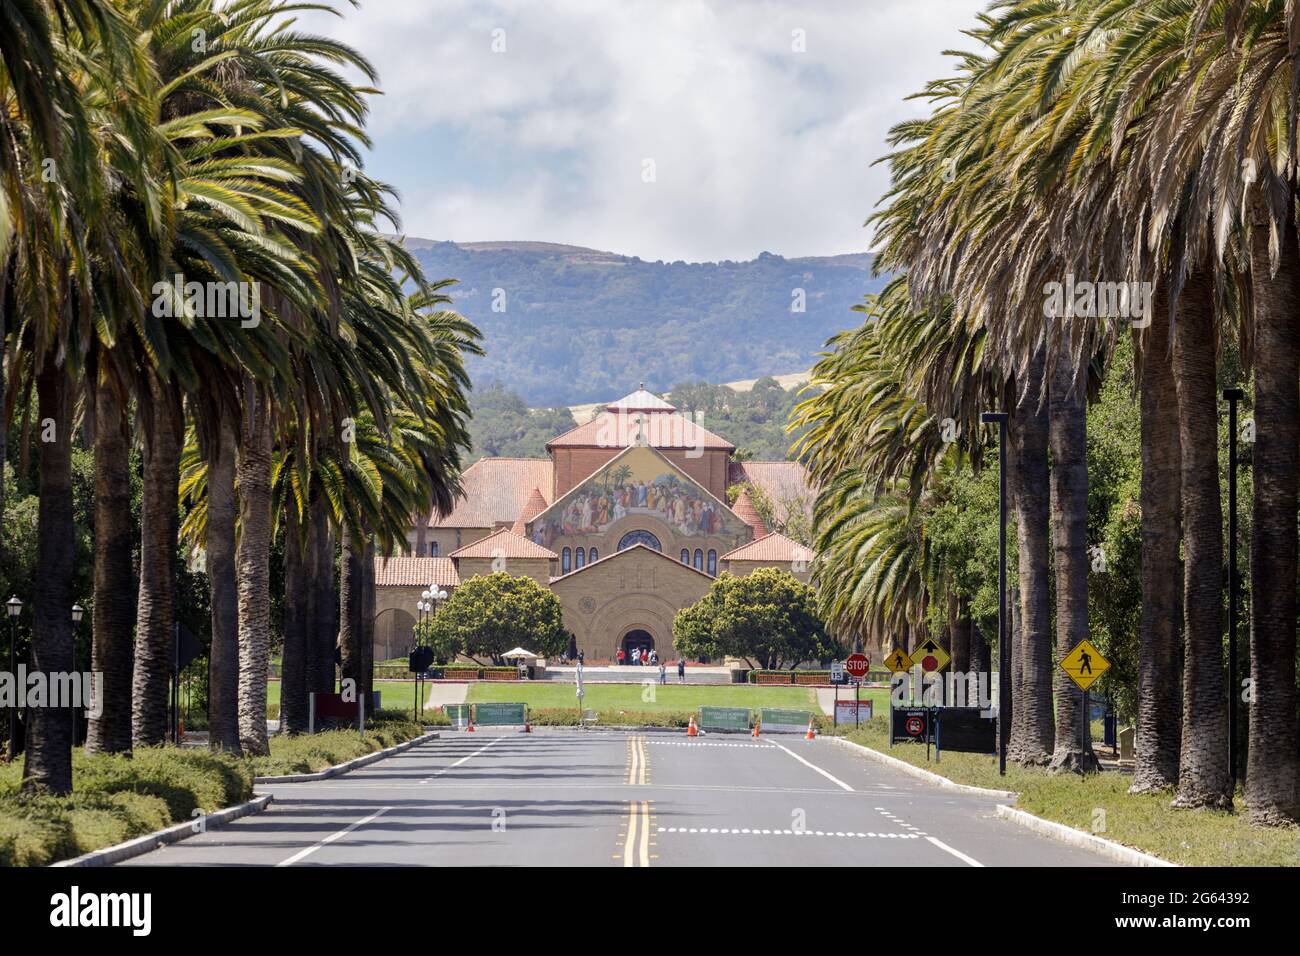 Stanford Memorial Church via Palm Drive à Palo Alto, Californie, États-Unis. Banque D'Images